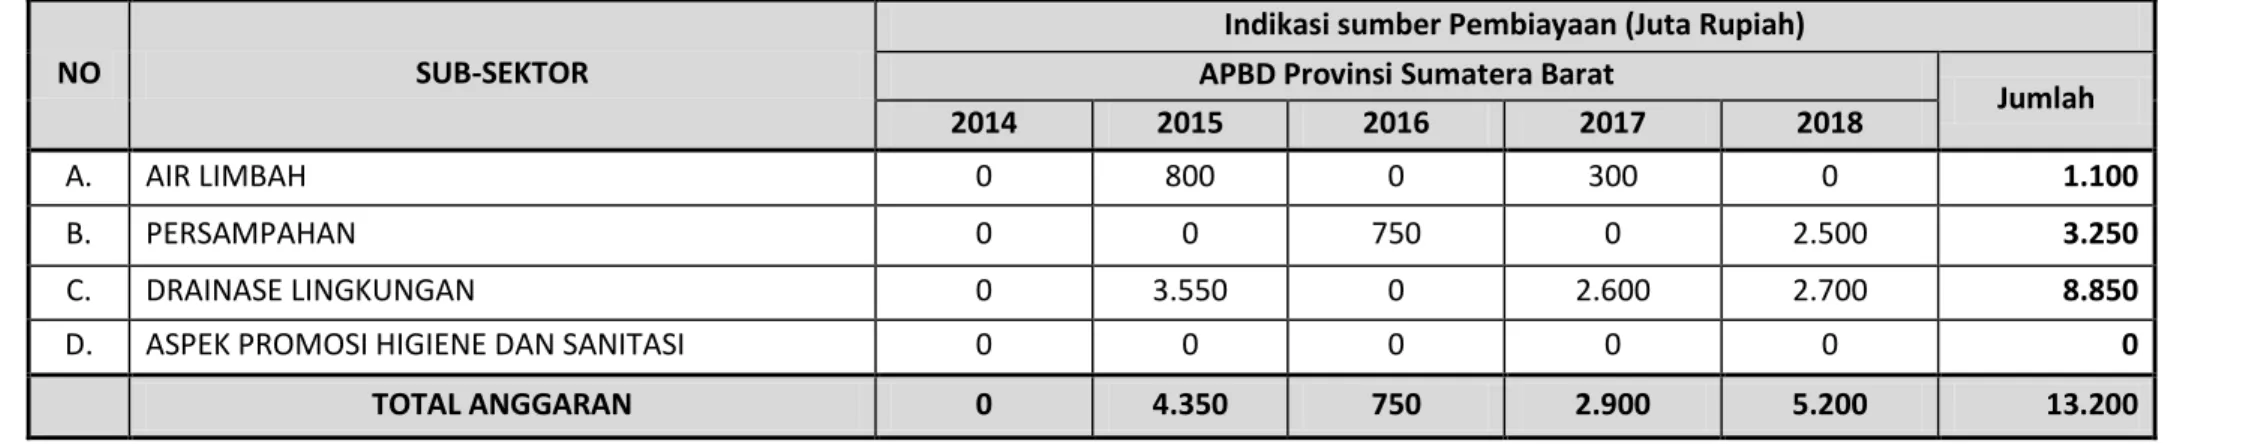 Tabel 4.1c. Ringkasan Indikasi Kebutuhan Biaya dan Sumber Pendanaan dan/atau Pembiayaan Pengembangan Sanitasi  APBD Provinsi Sumatera Barat untuk 5 tahun